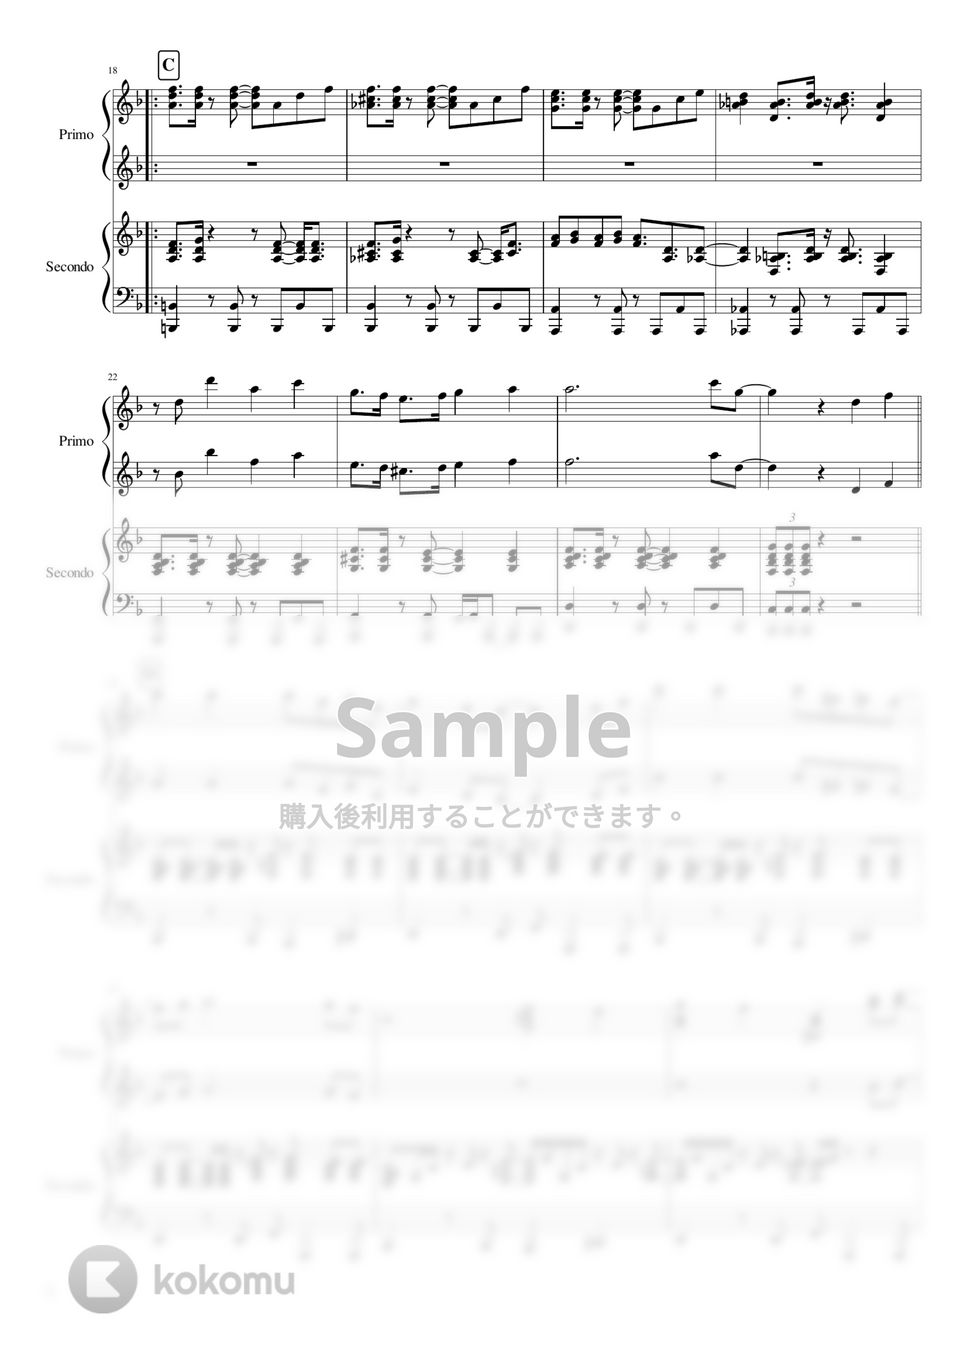 椎名林檎 - 長く短い祭 (連弾) by THETA